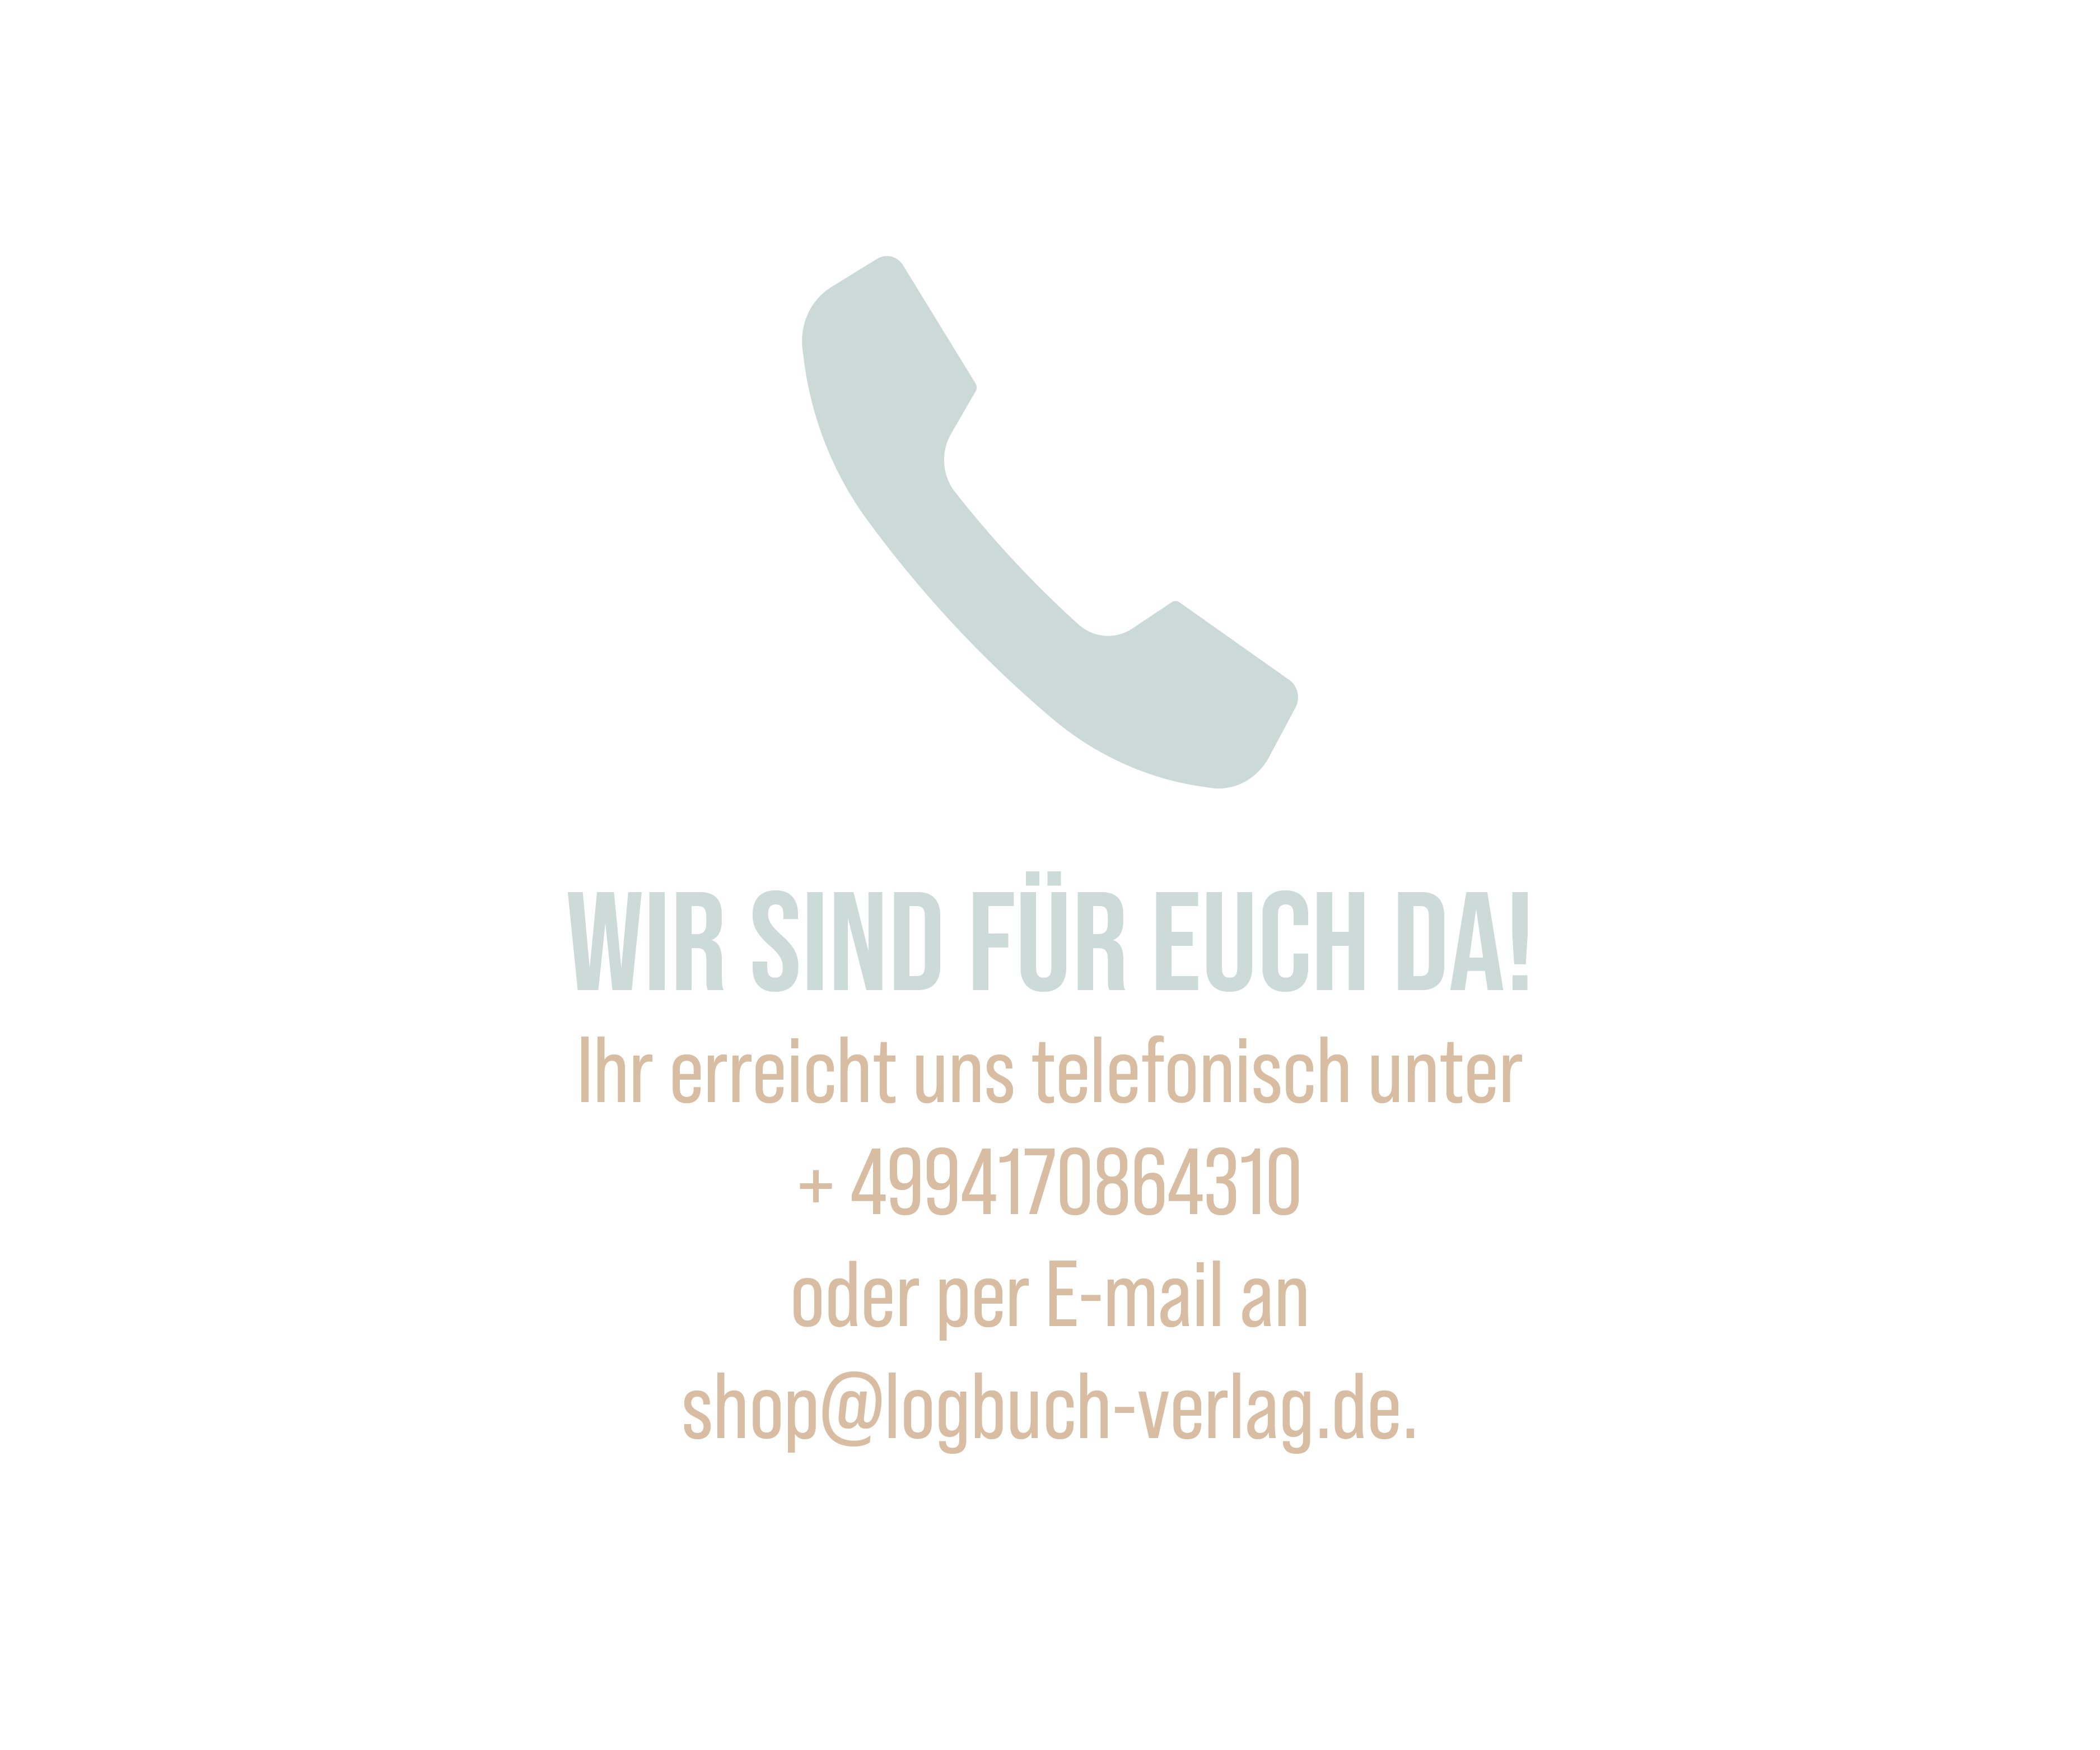 Kontaktdaten für unseren Kundenservice: ihr erreicht und telefonisch unter 094170864310 oder per E-Mail an shop@logbuch-verlag.de